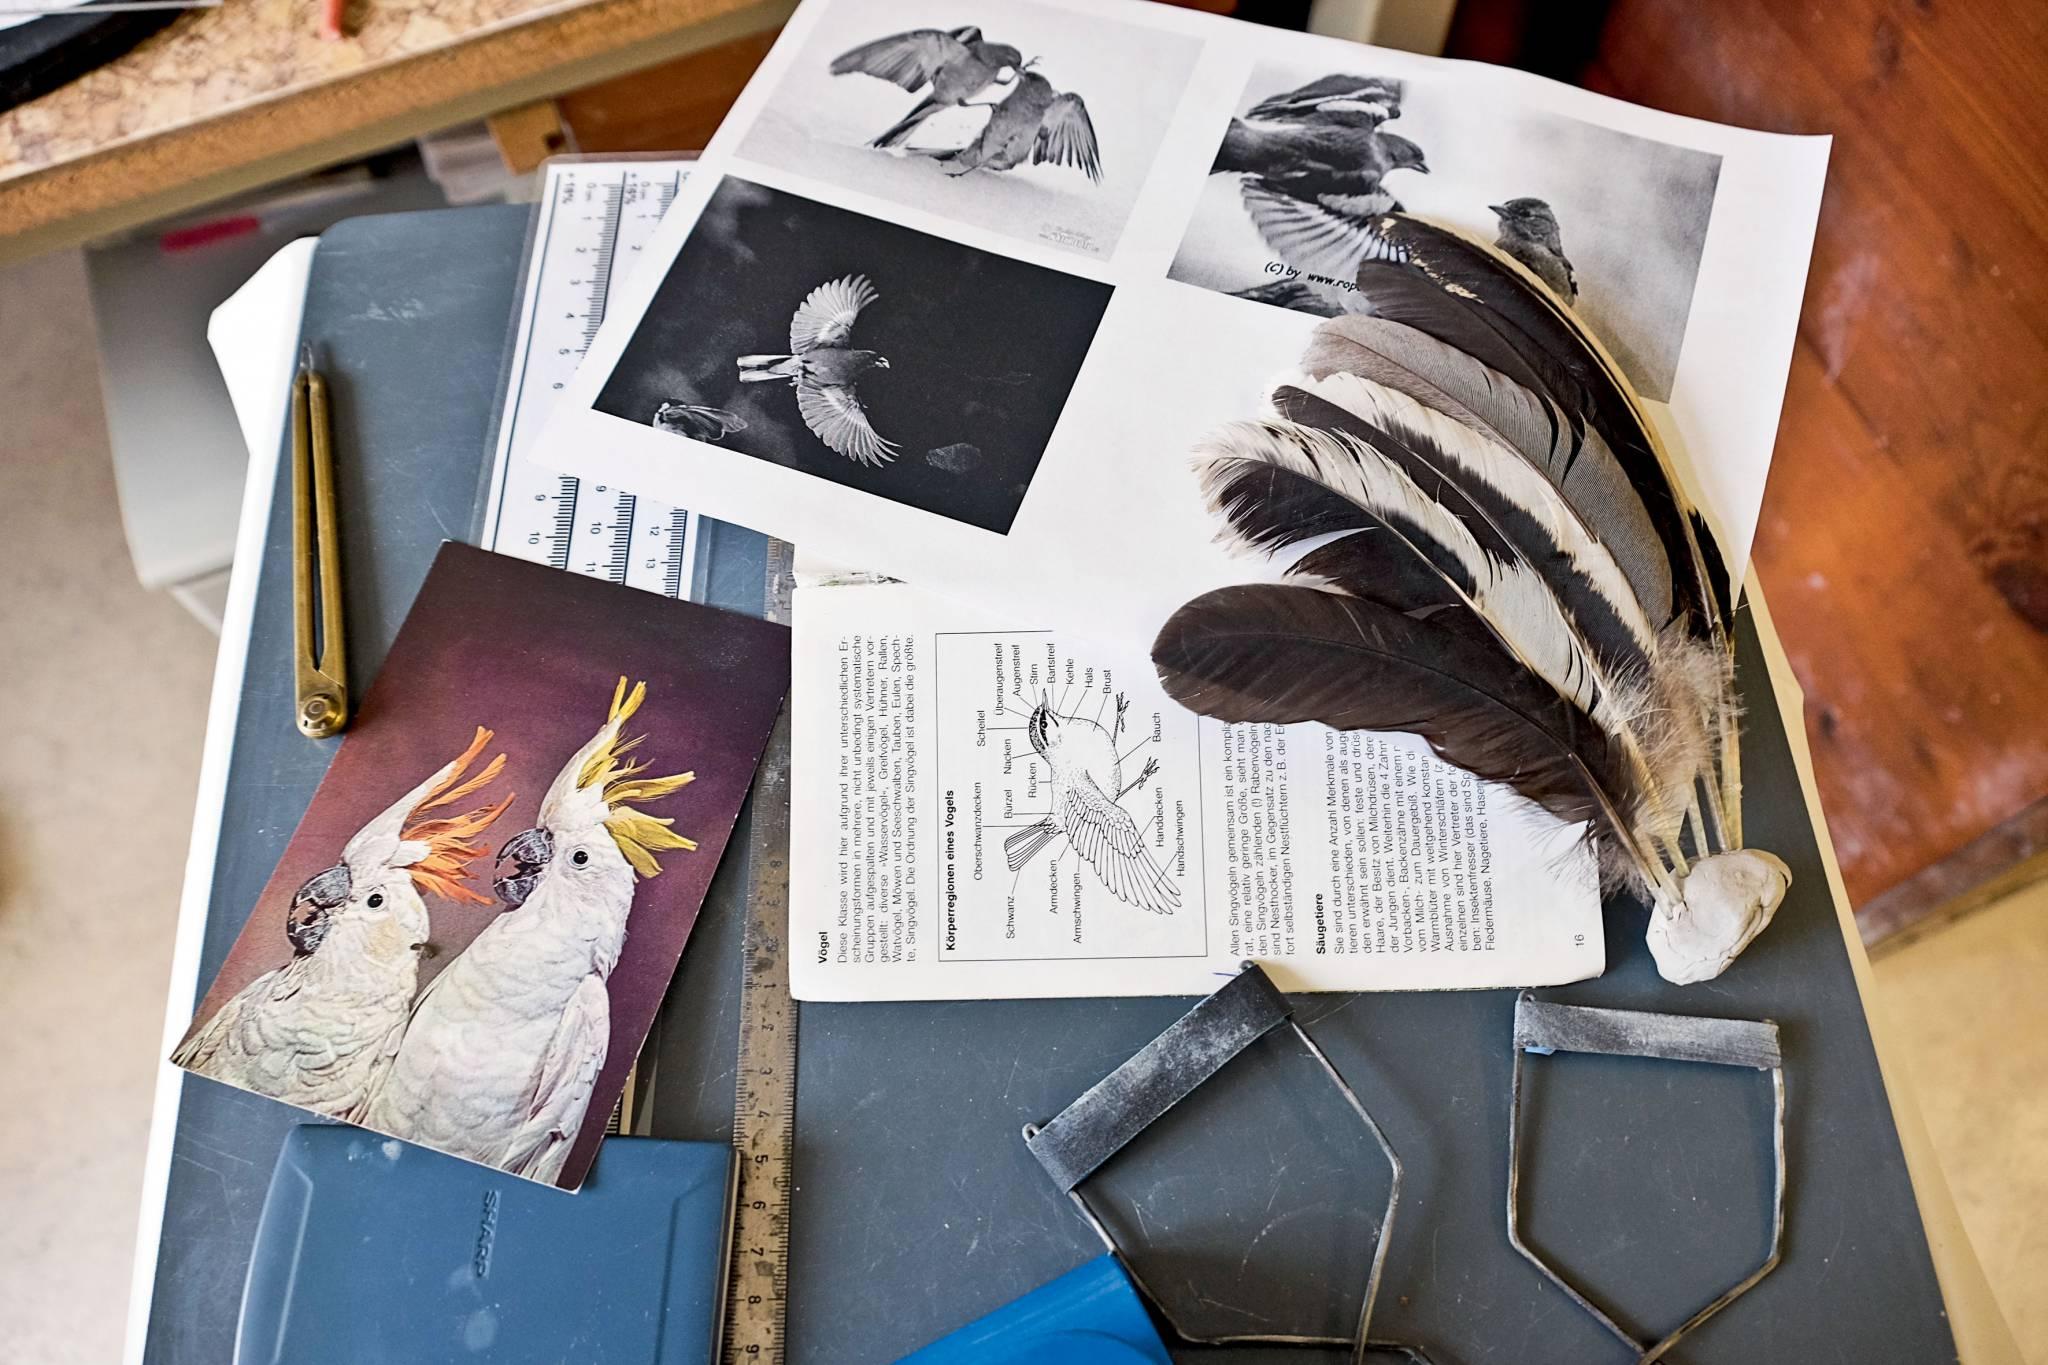  Pełne inspiracji biurko modelarki, która pracuje  właśnie nad figurką papugi. (Fot. Anna Janowska)